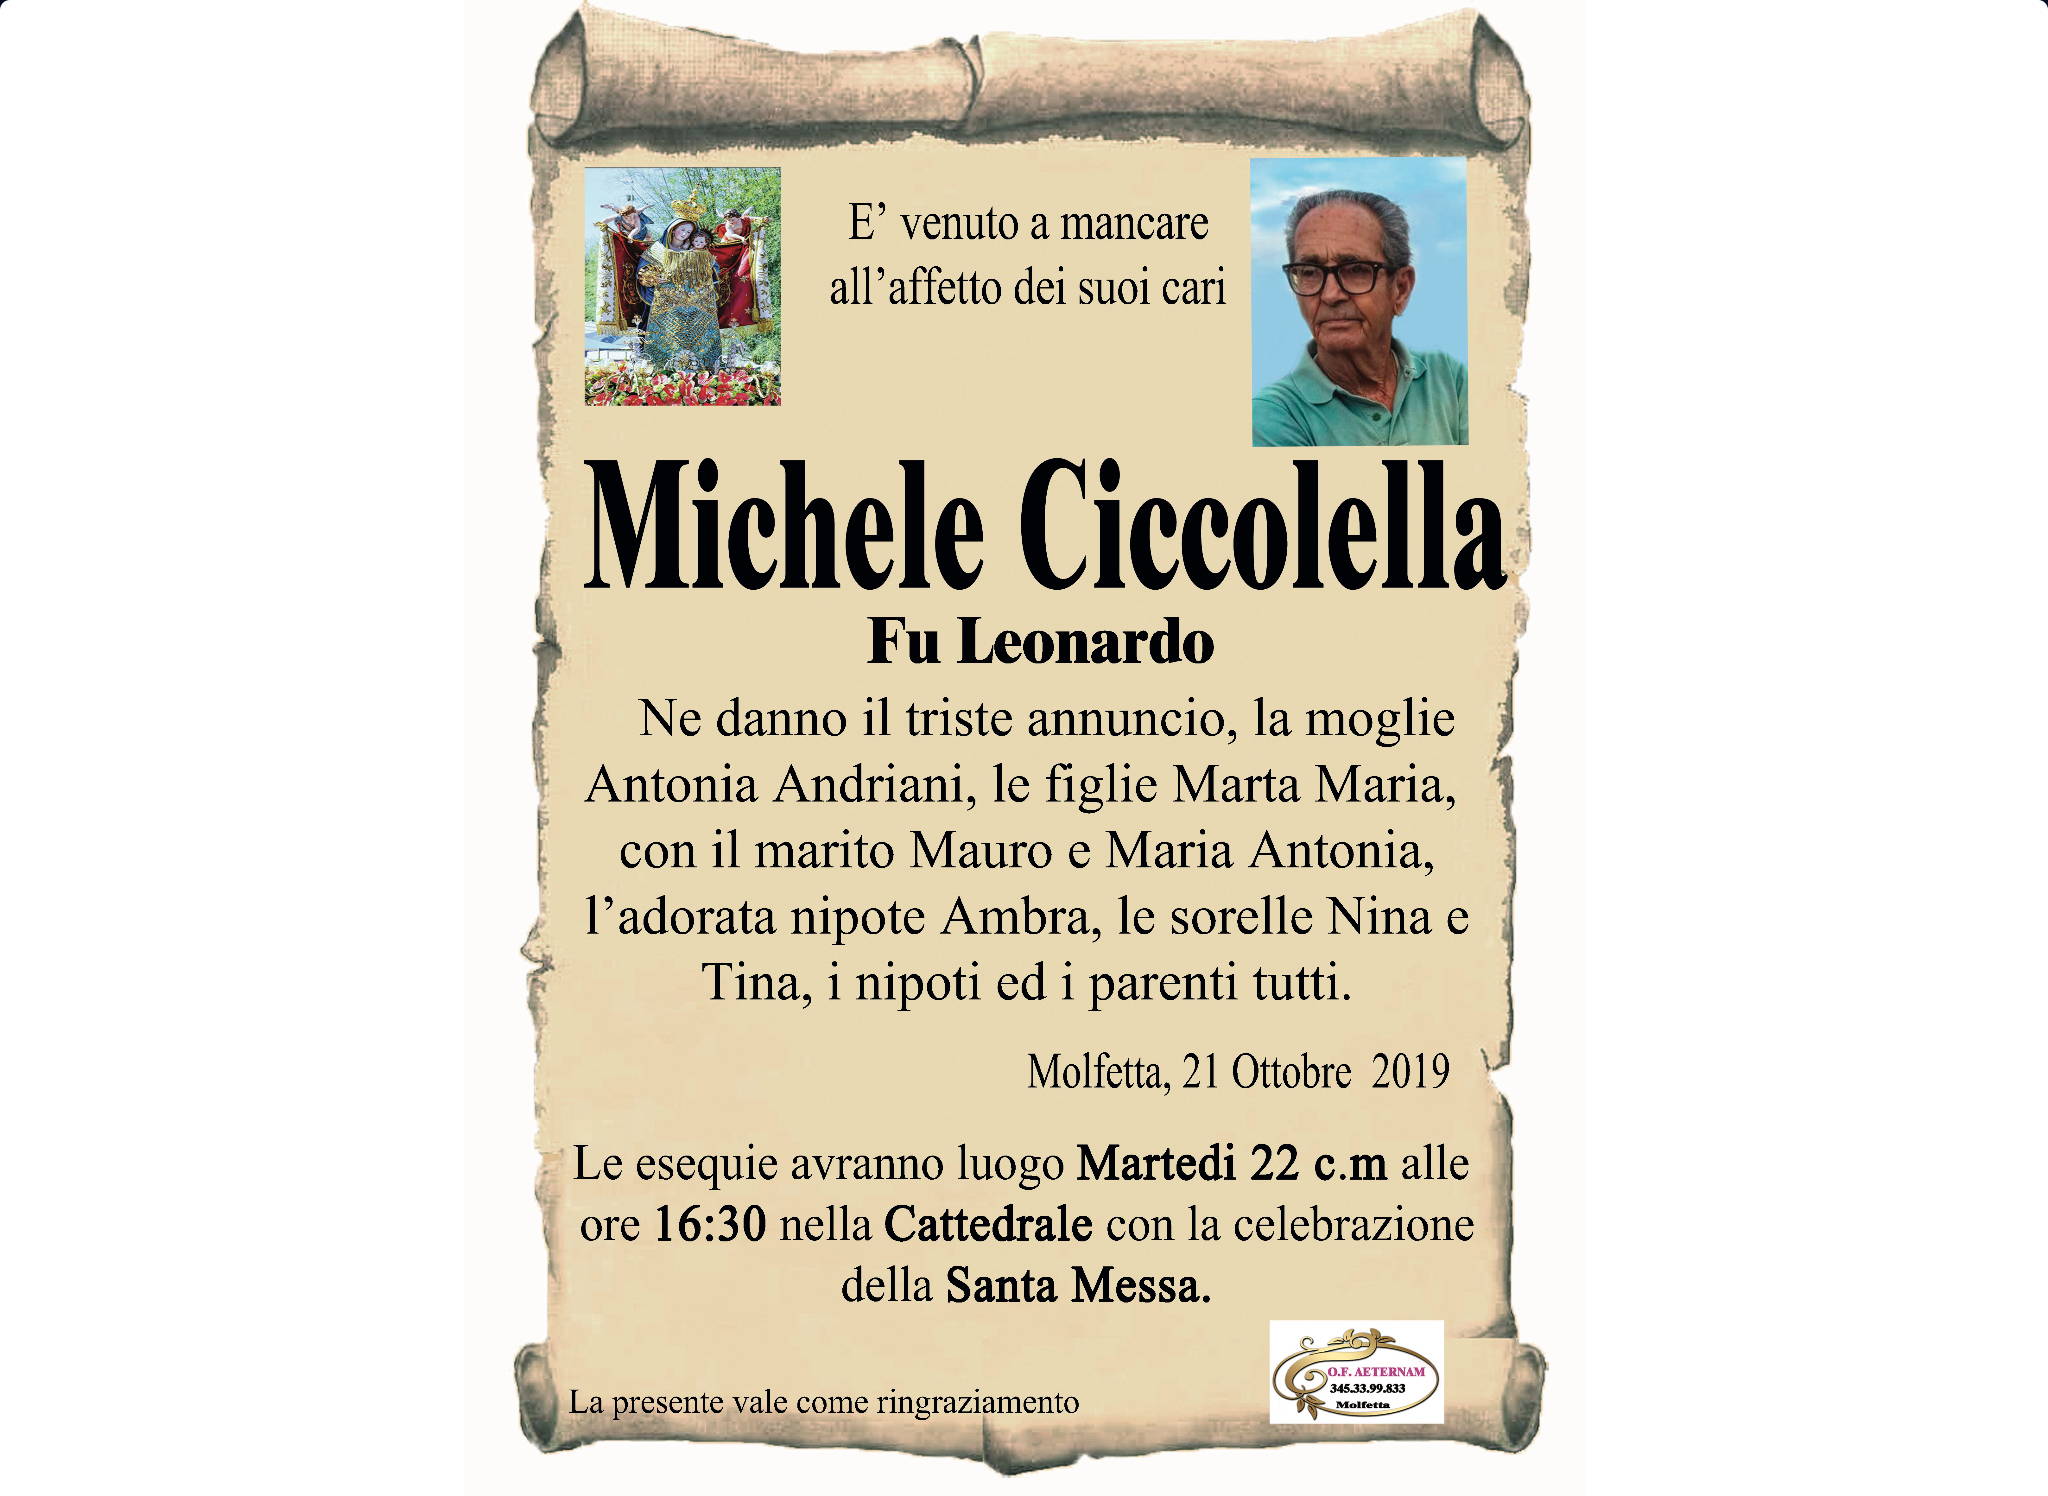 Michele Ciccolella